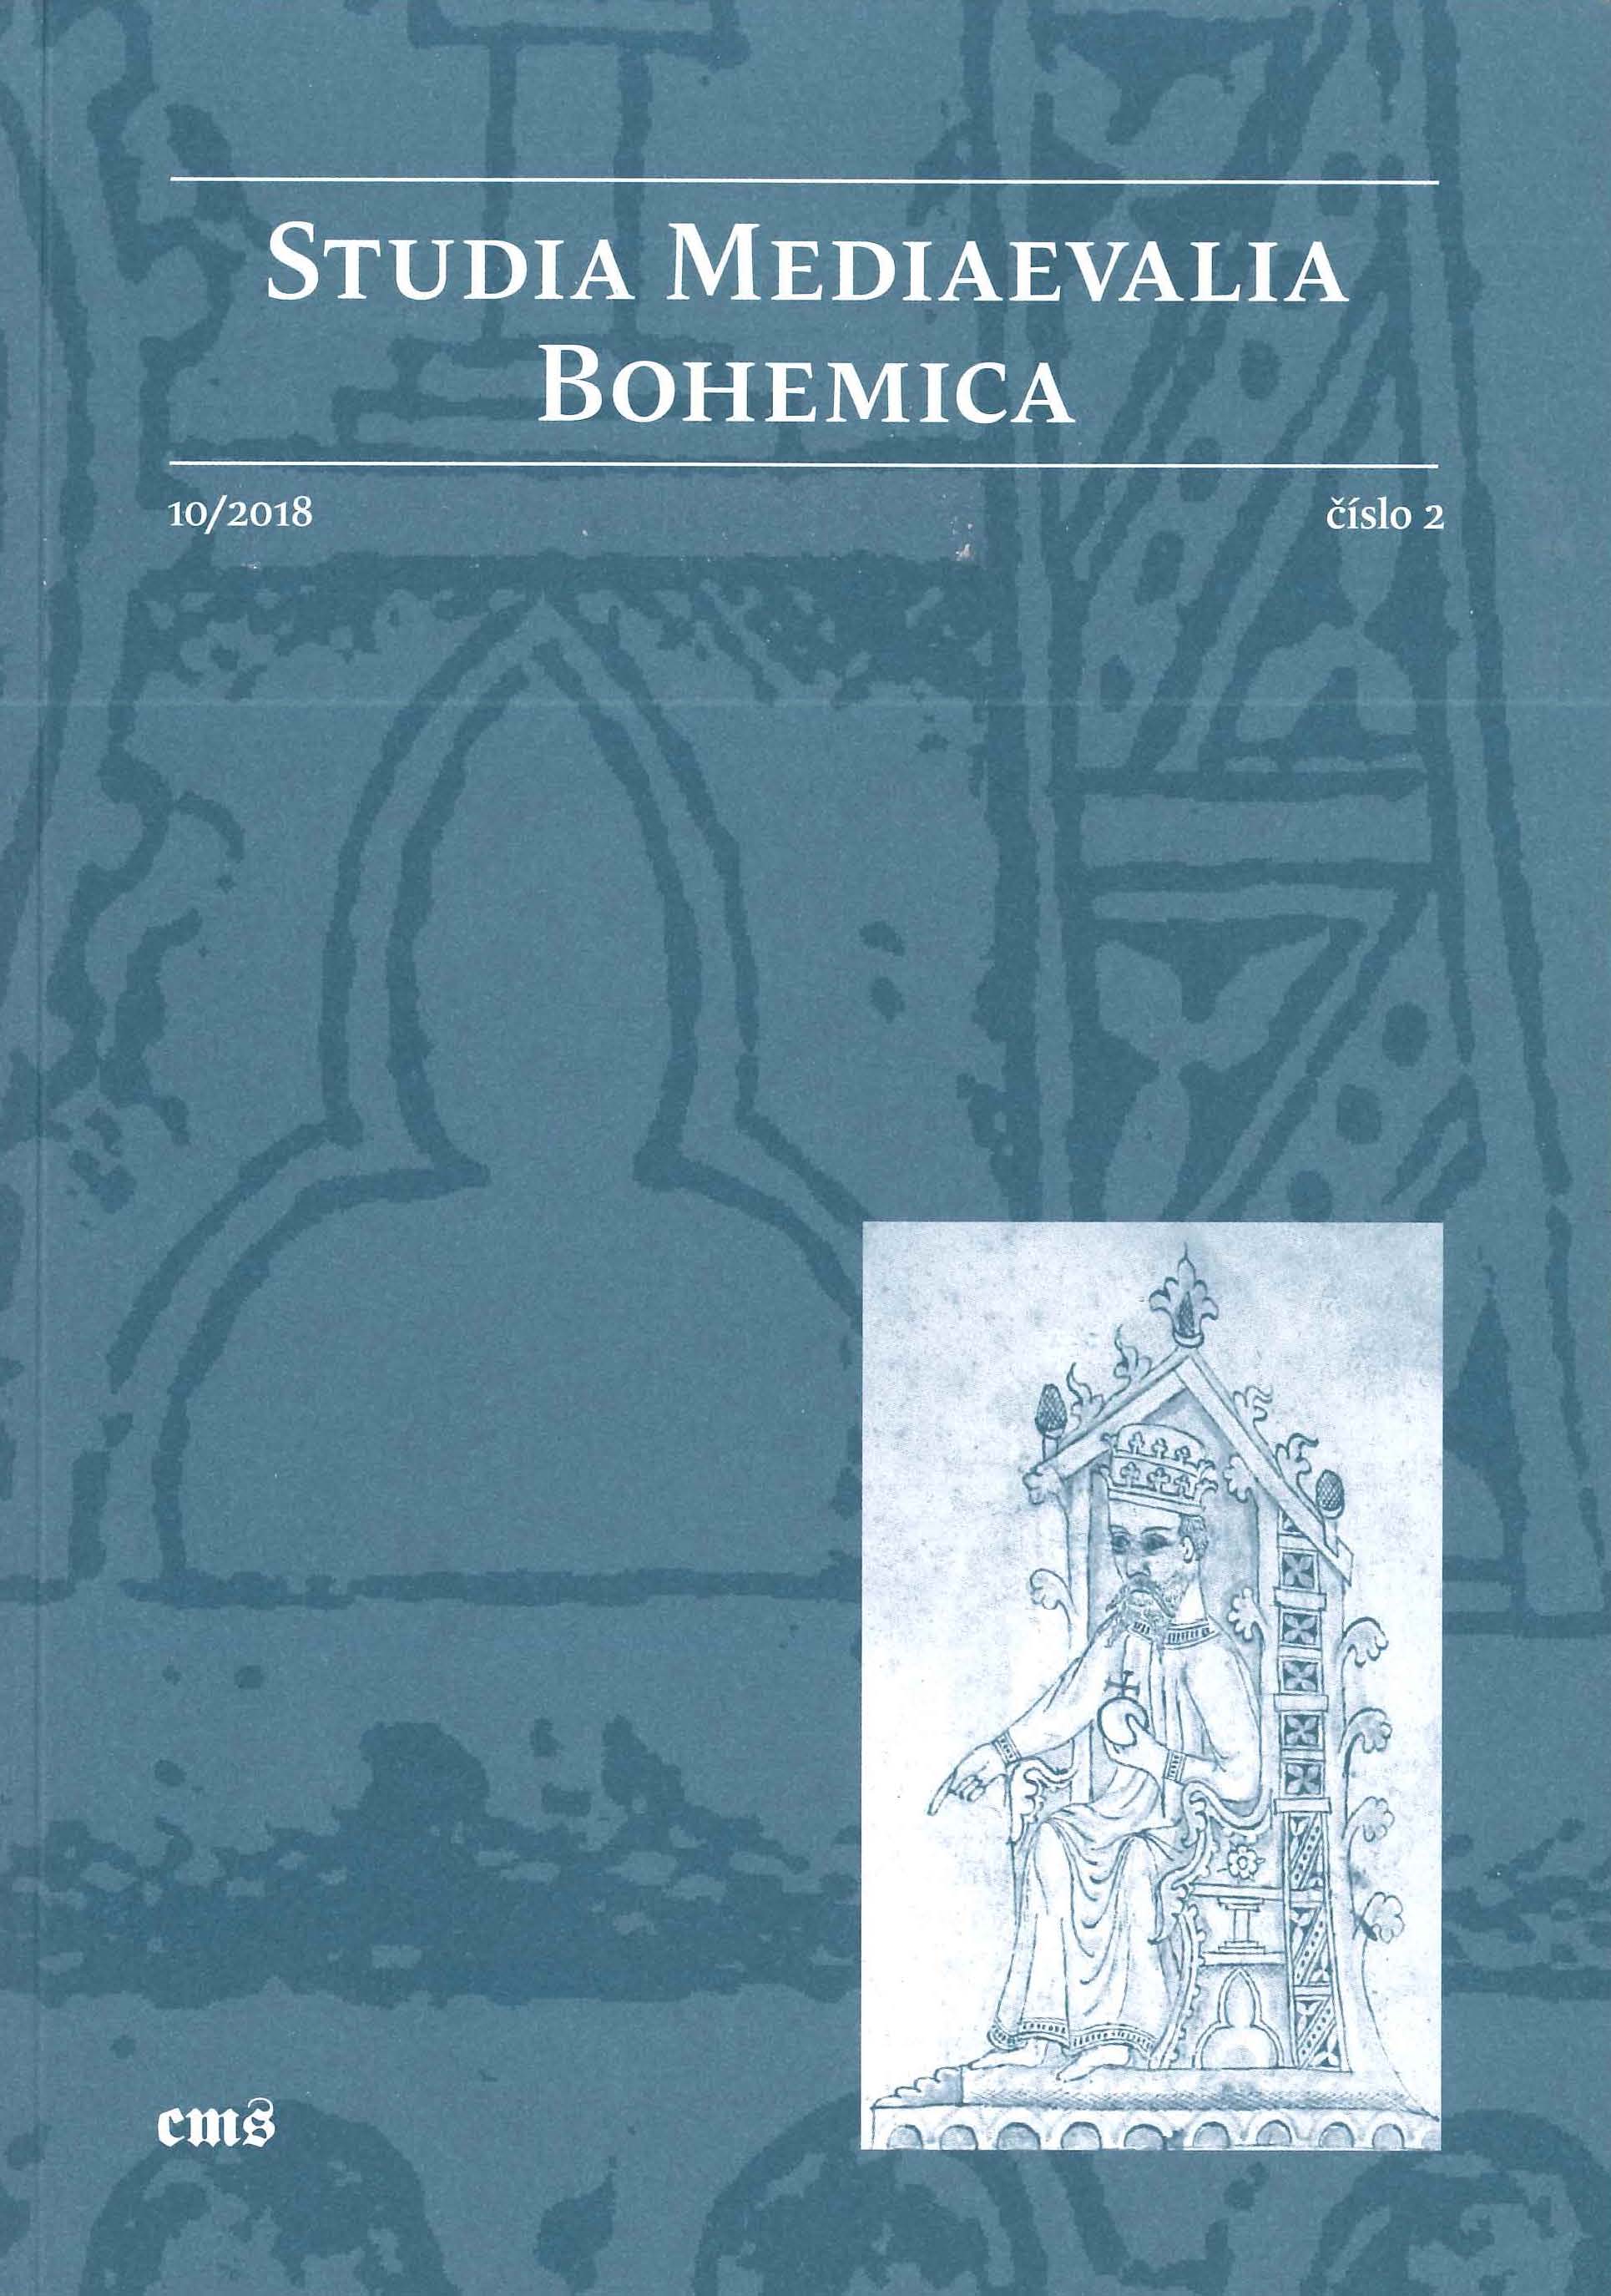 Pavel Bolina – Tomáš Klimek – Václav Cílek, Old Roads in the Landscape of Central Bohemia Cover Image